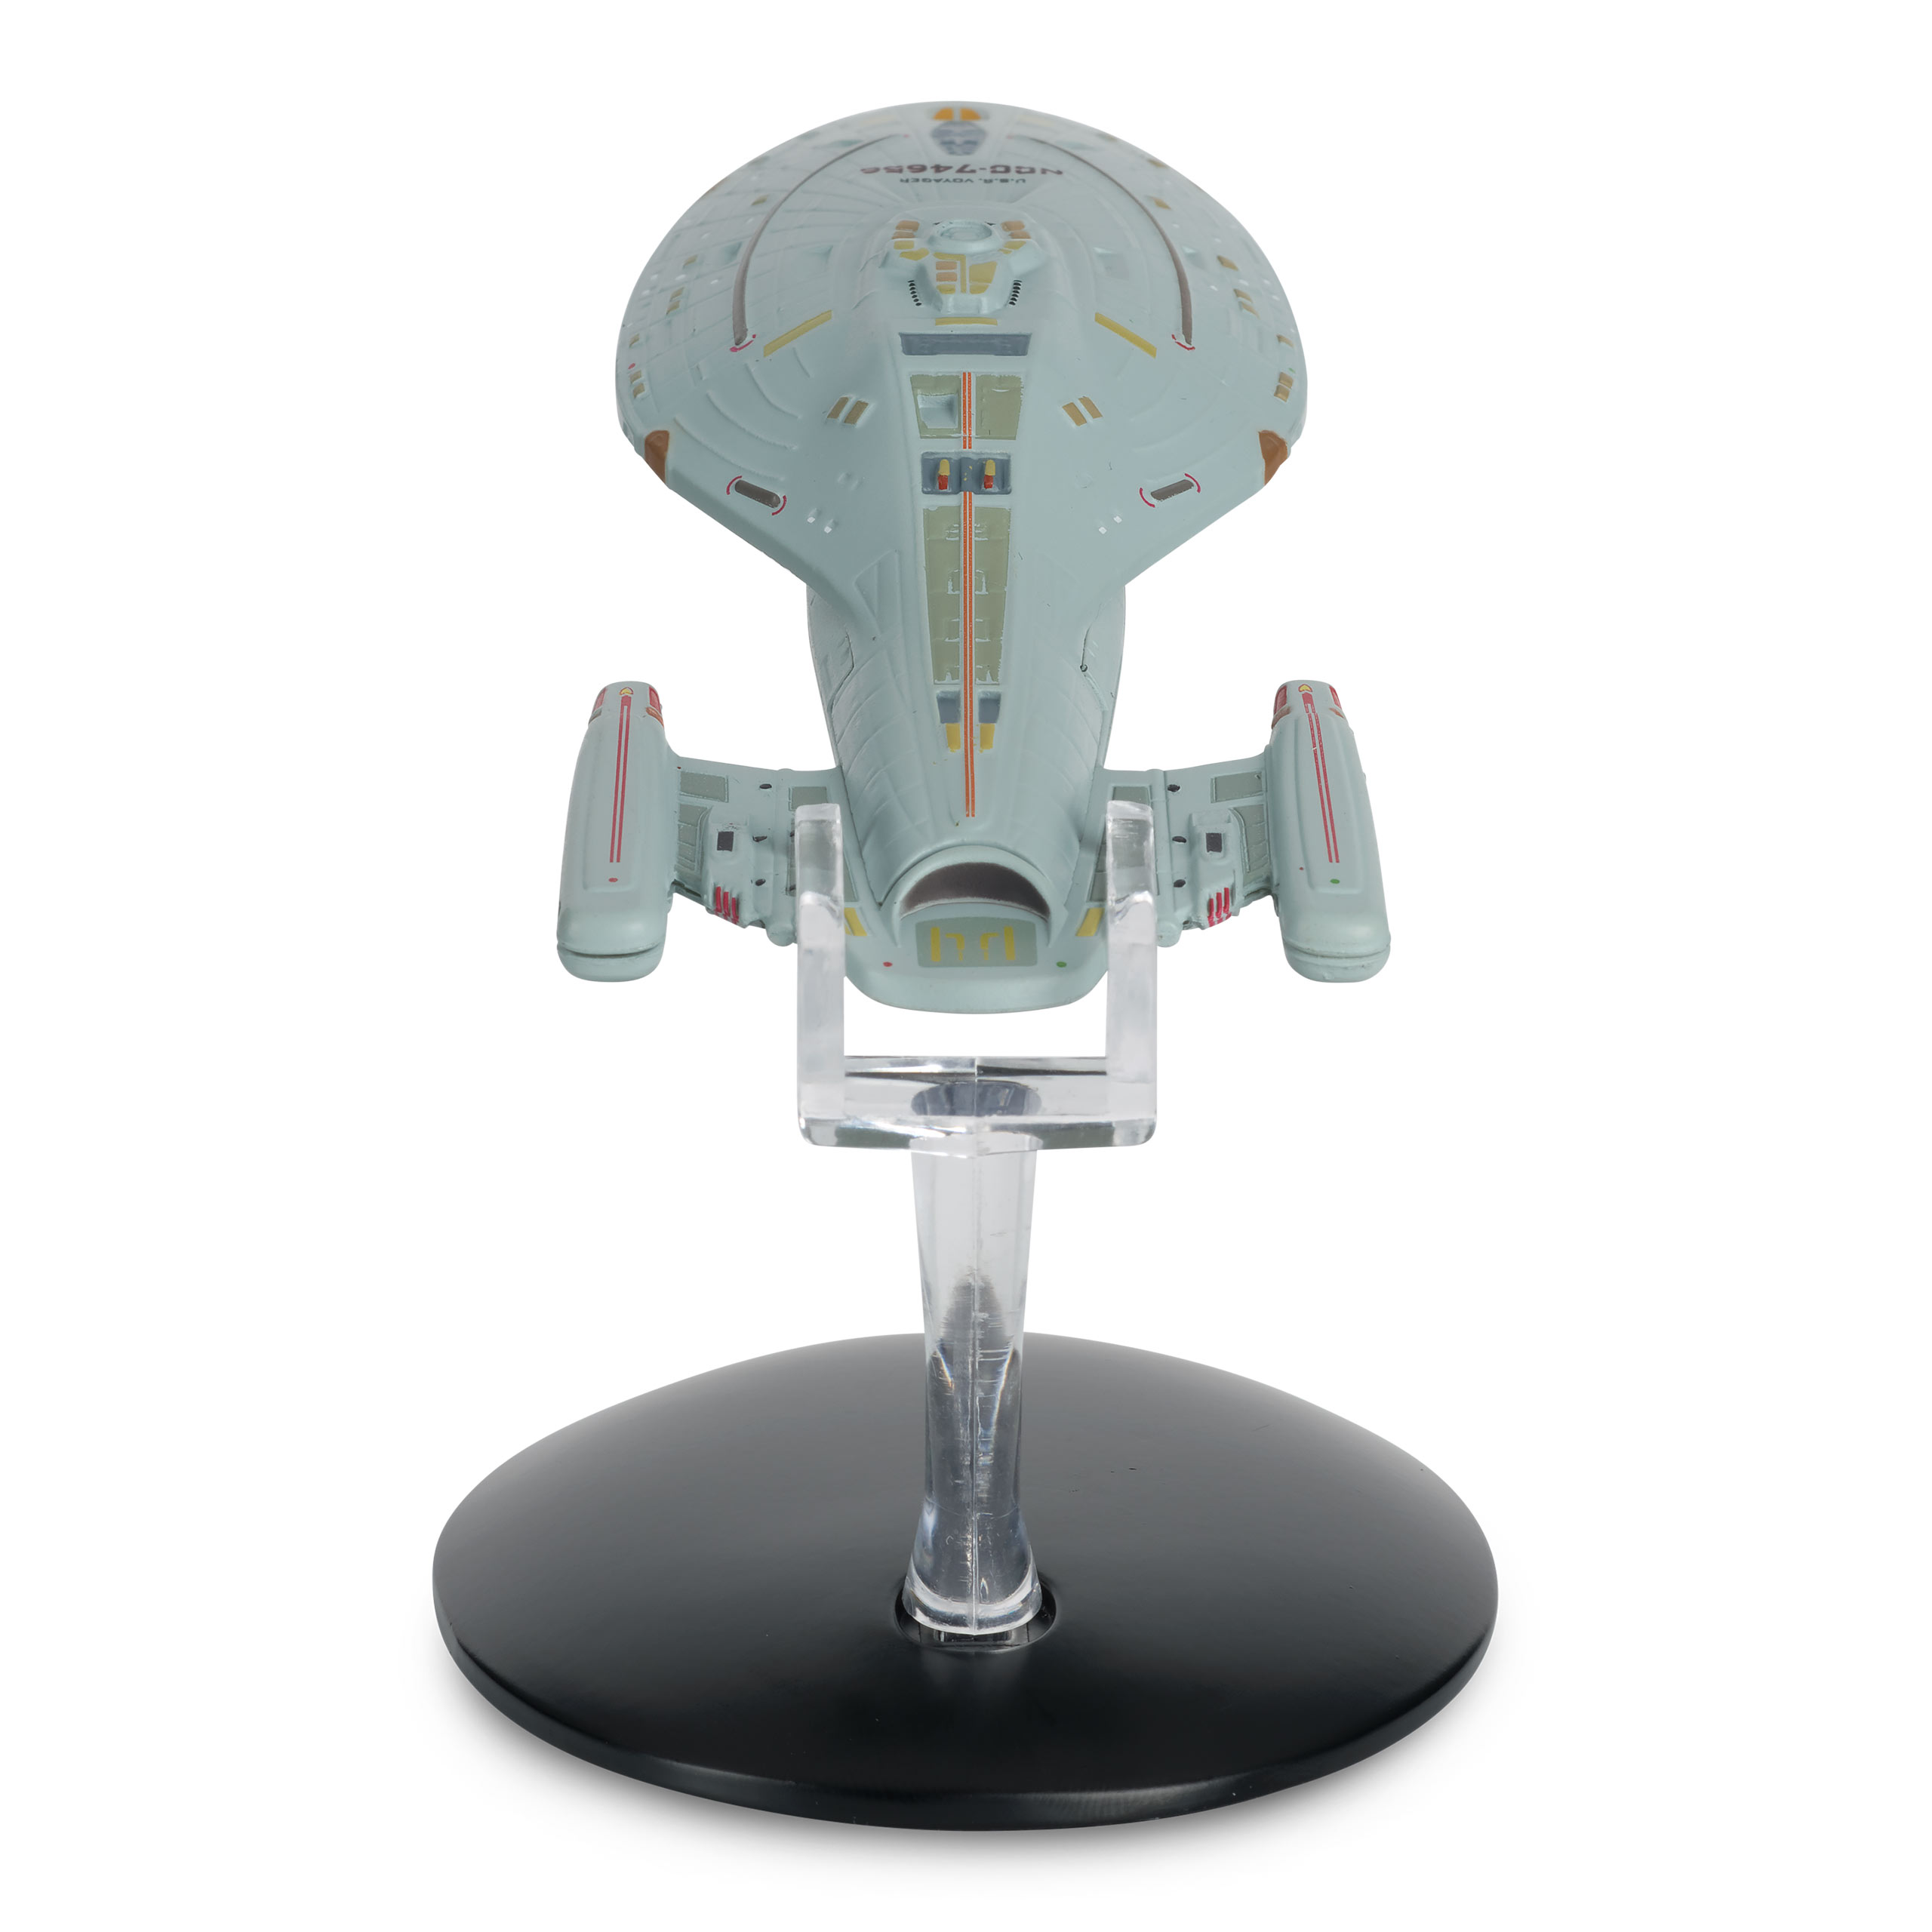 Star Trek - Raumschiff U.S.S. Voyager NCC-74656 Hero Collector Figur